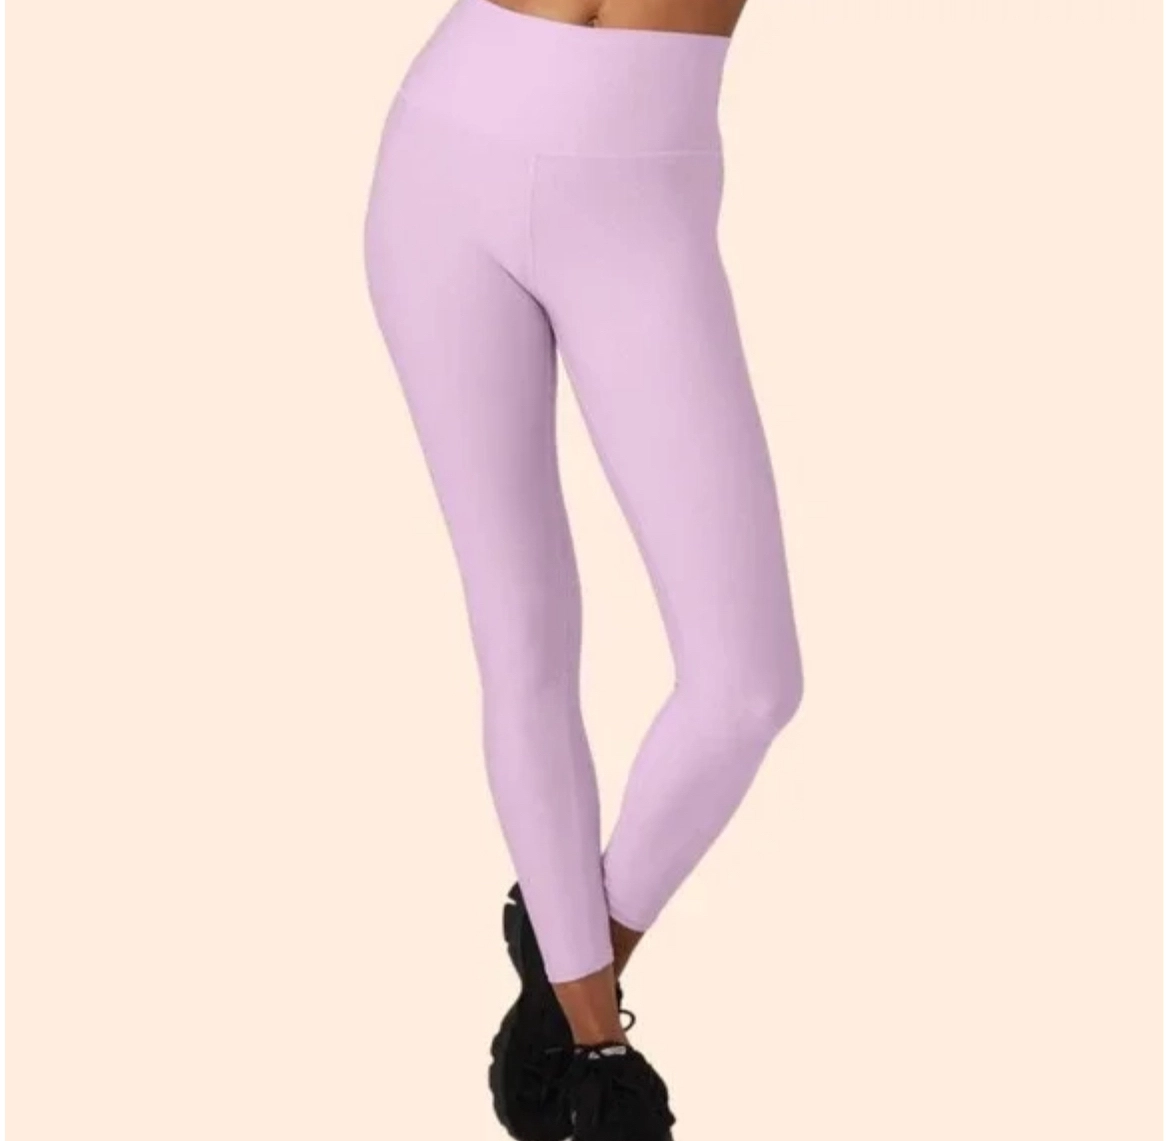 Alo Yoga Pantalones Rosa 29% OFF - Portèlo: Compra y Vende Moda de